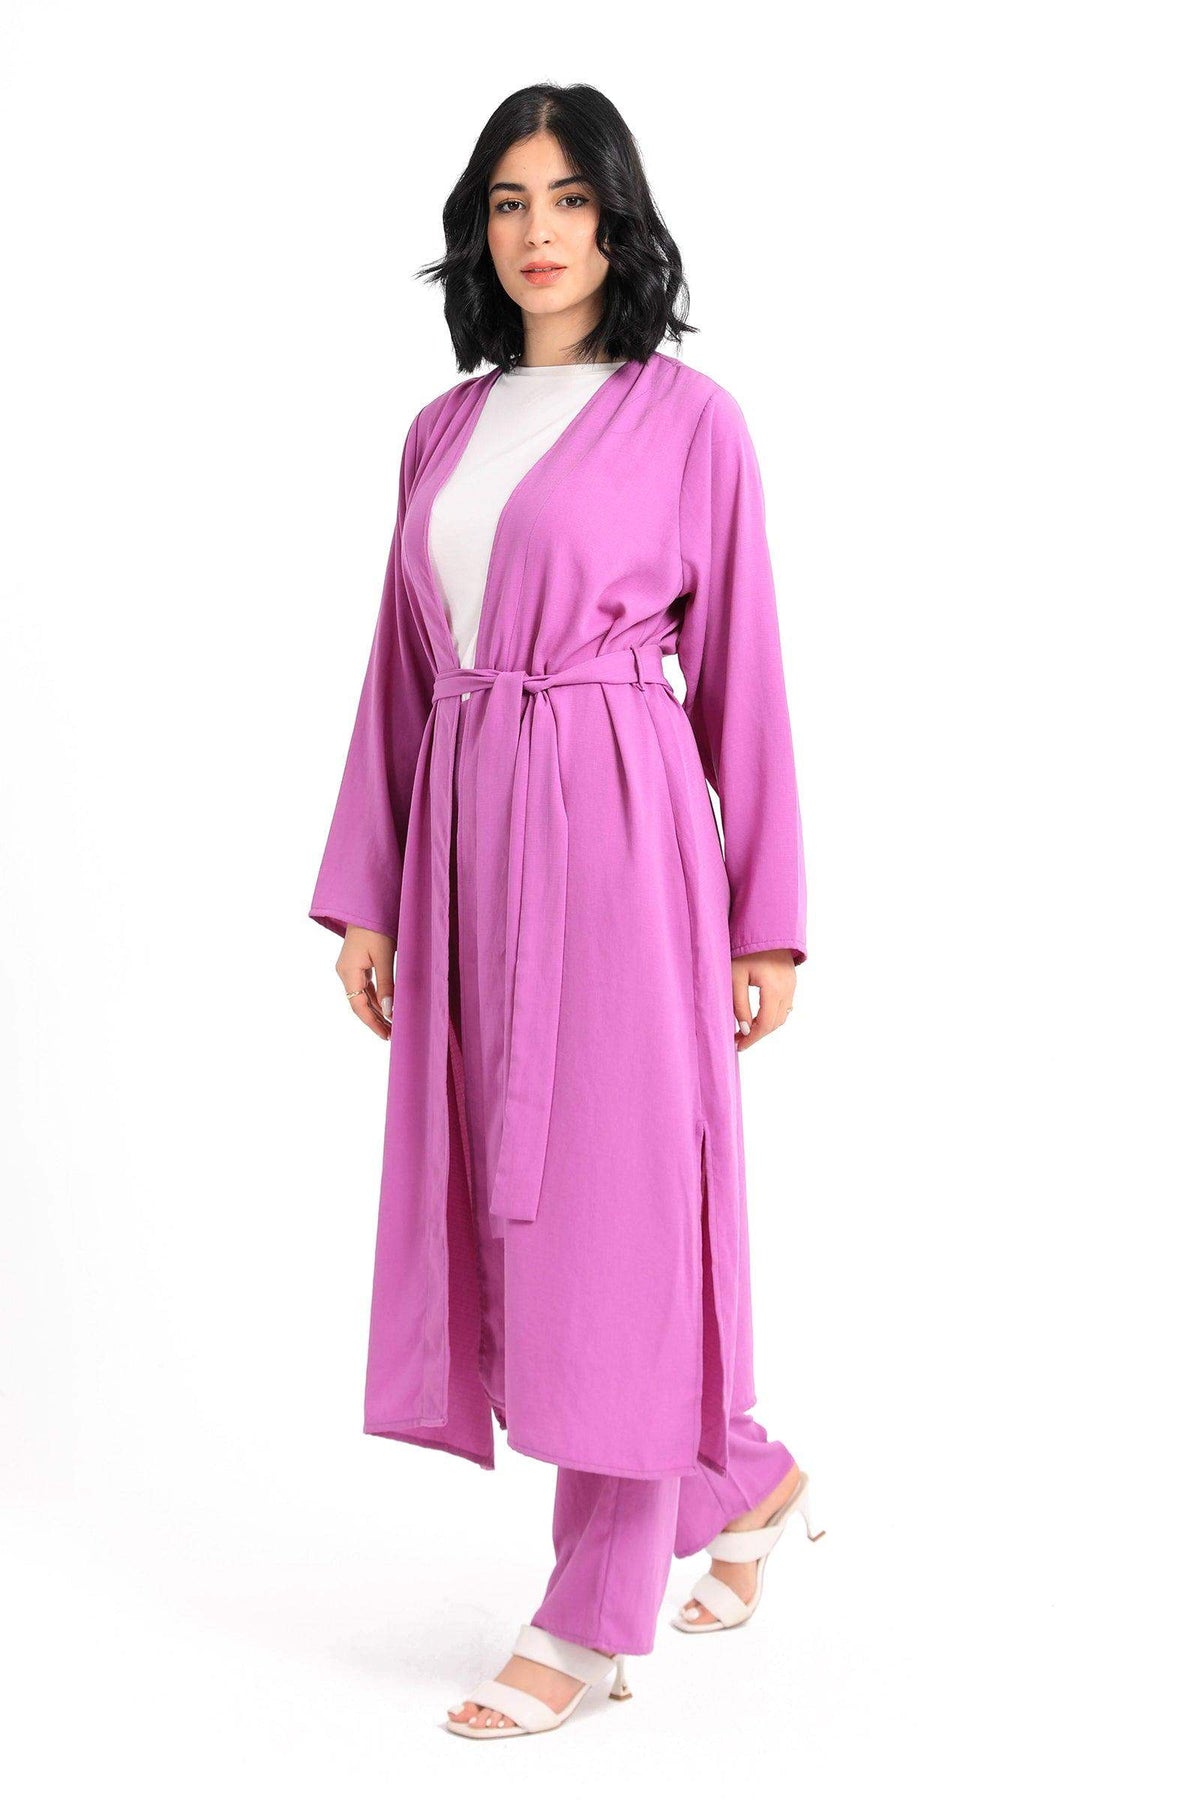 Plain Long Sleeves Kimono - Carina - كارينا